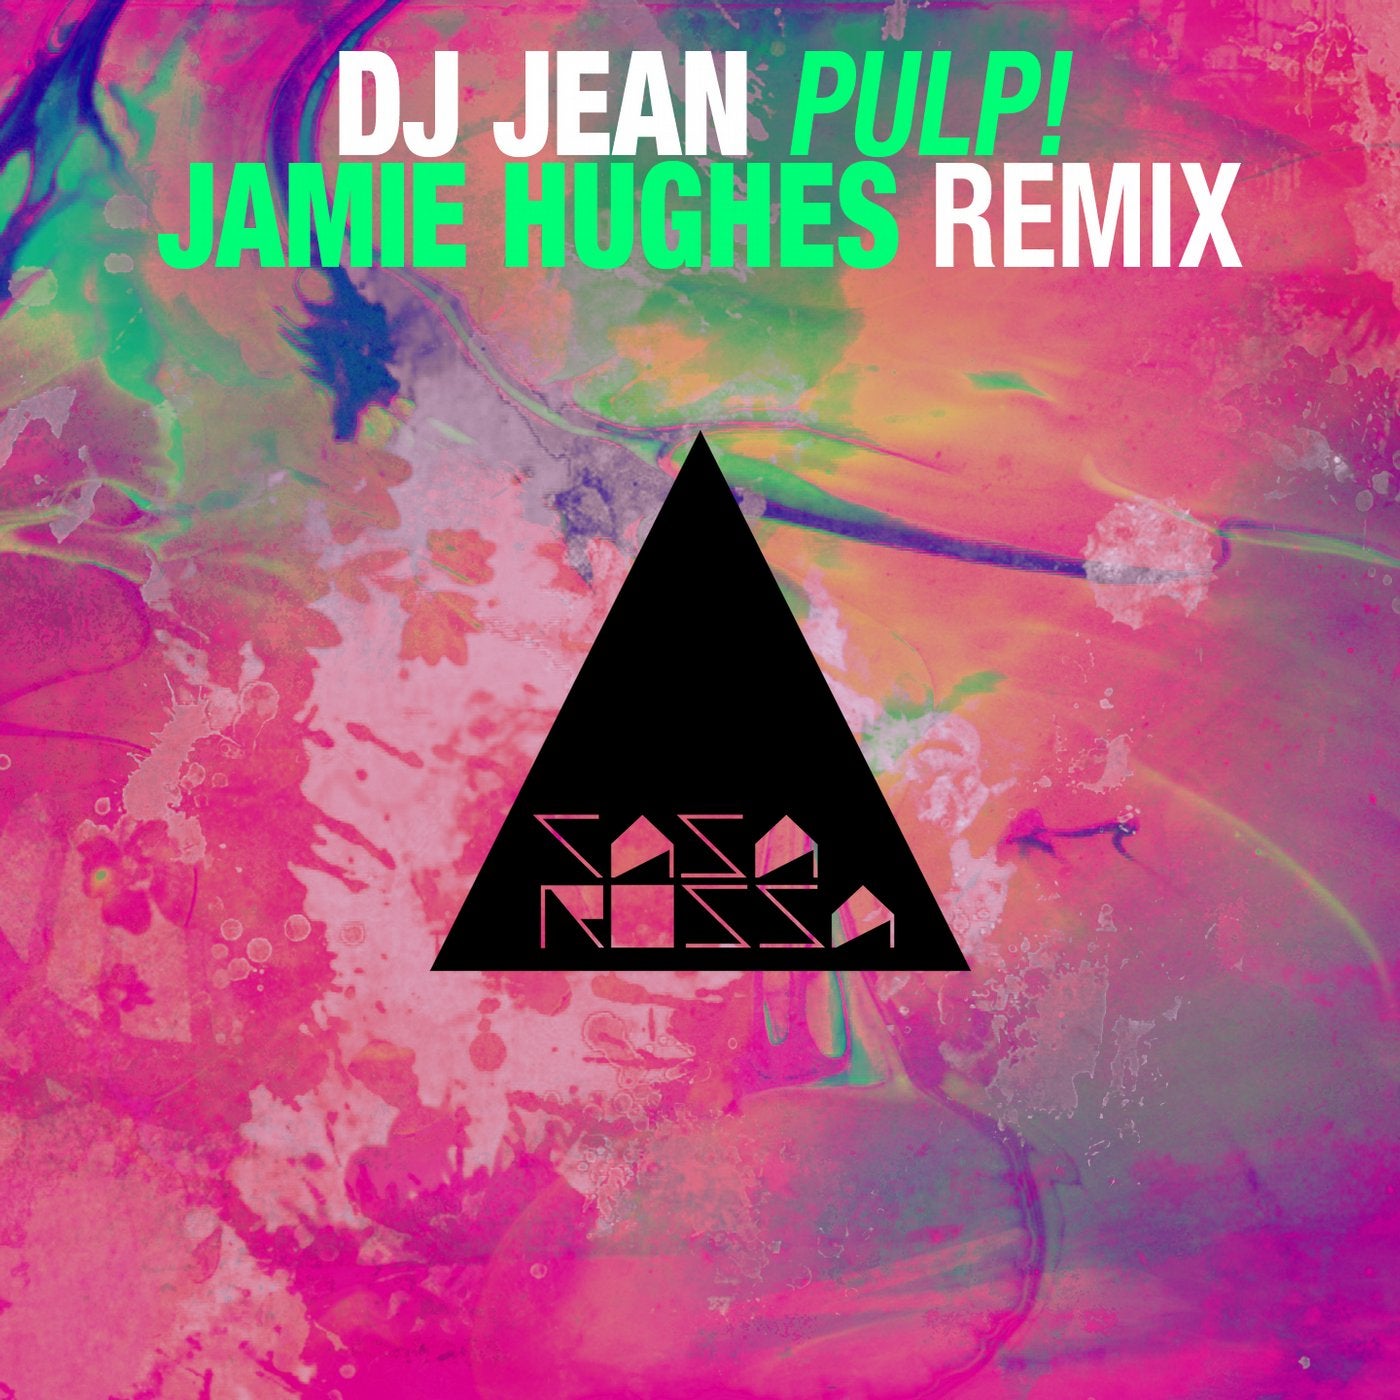 Pulp! - Jamie Hughes Remix